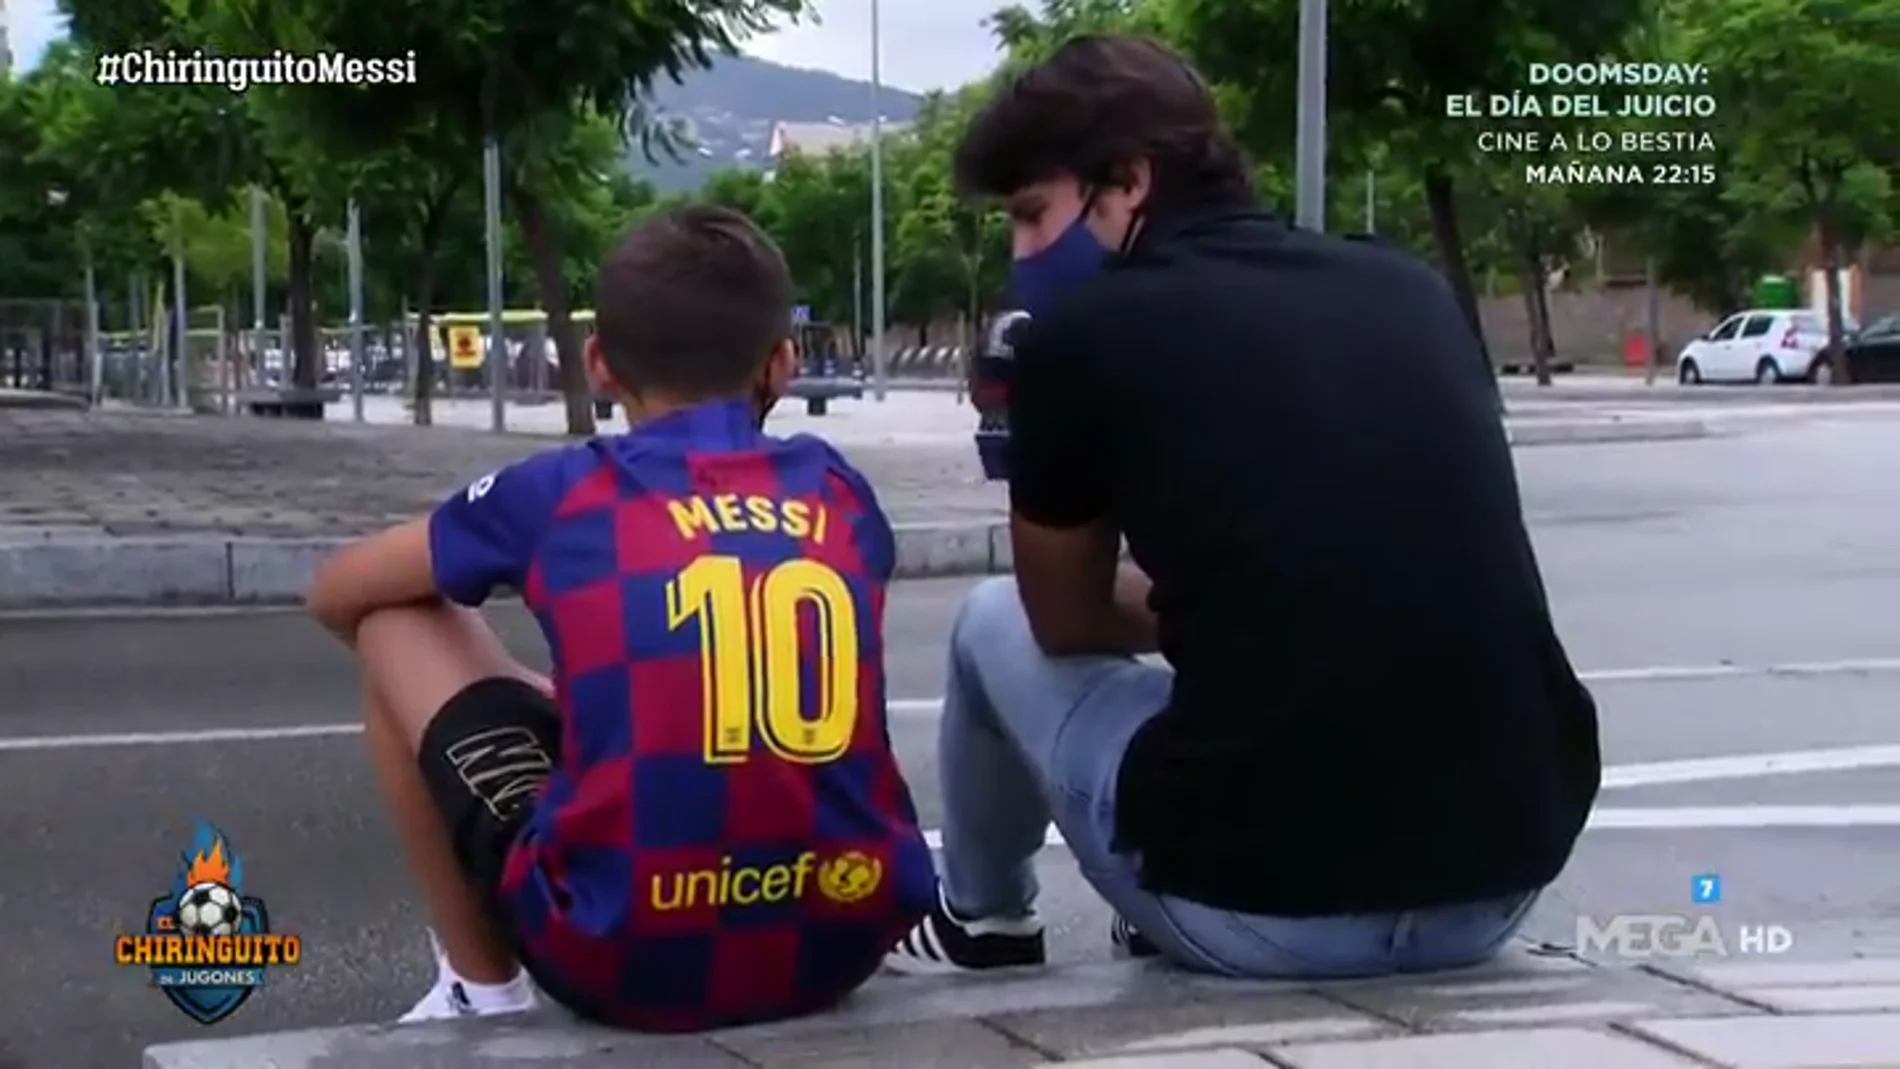 KEVIN, niño seguir del Barça: "Me enteré de que Messi se quedaba por El Chiringuito" 